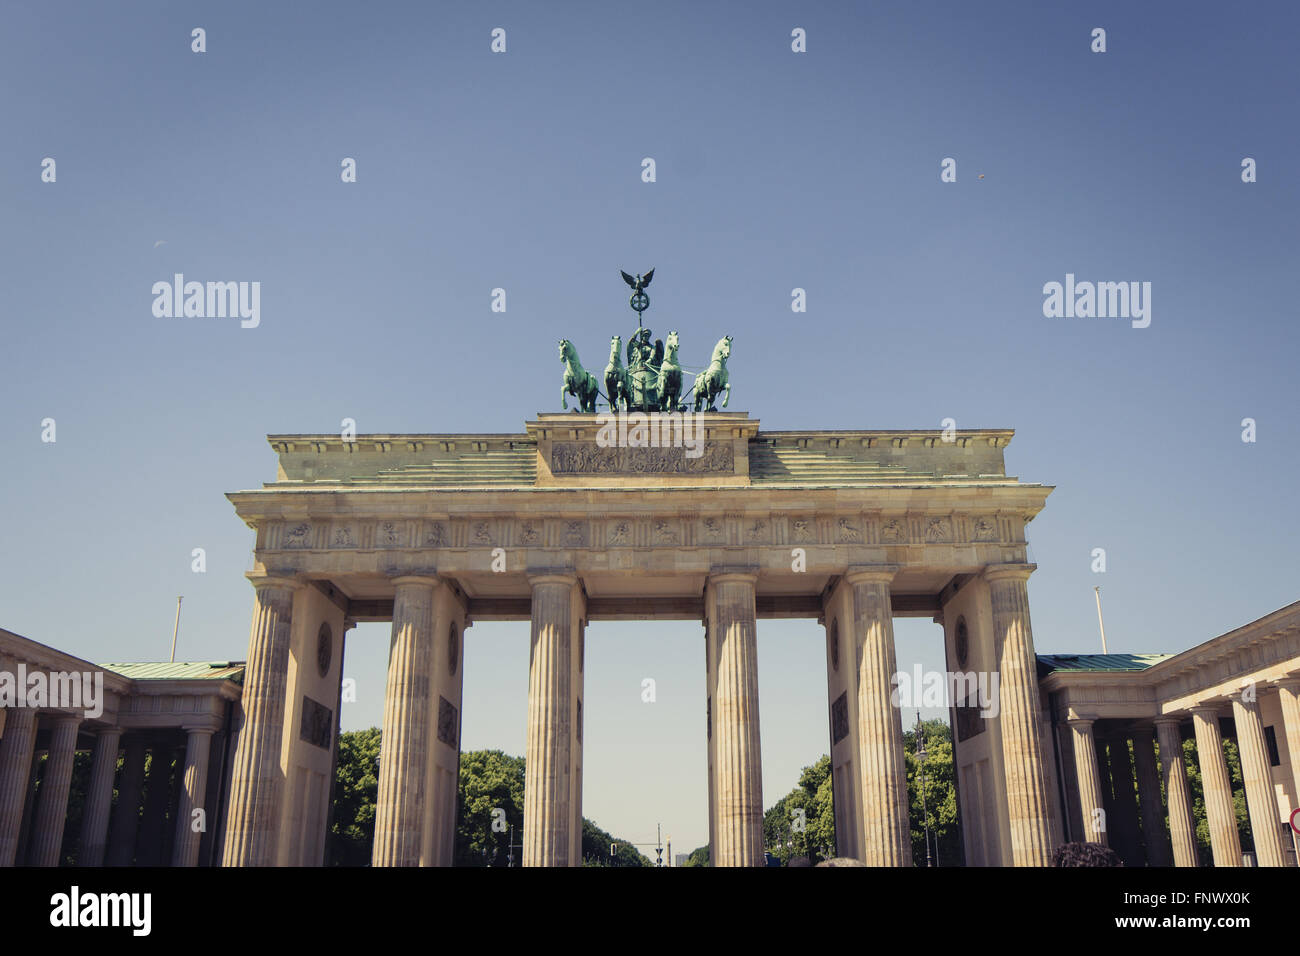 Puerta de Brandeburgo, Berlín, Alemania - El estilo de época Foto de stock